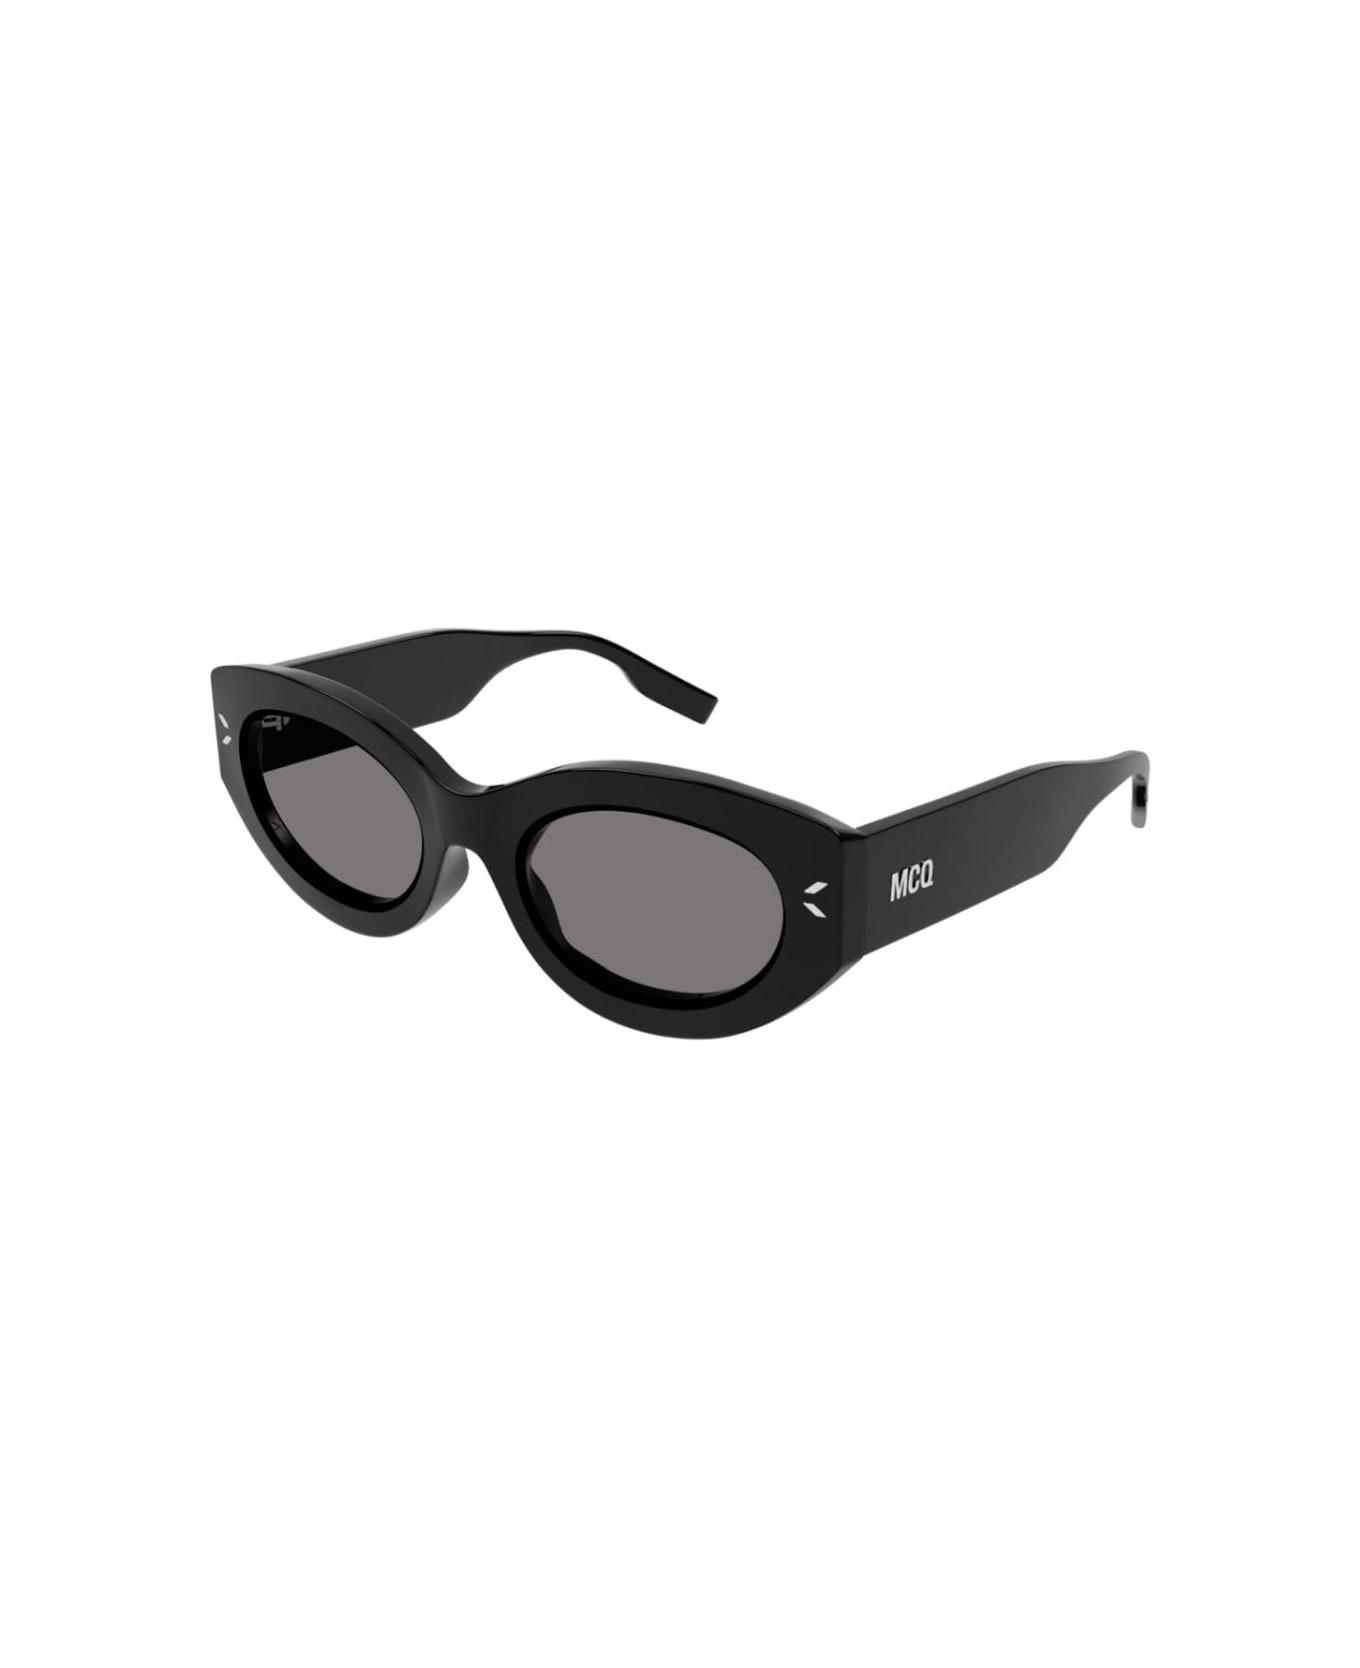 McQ Alexander McQueen MQ324s Sunglasses - Nero